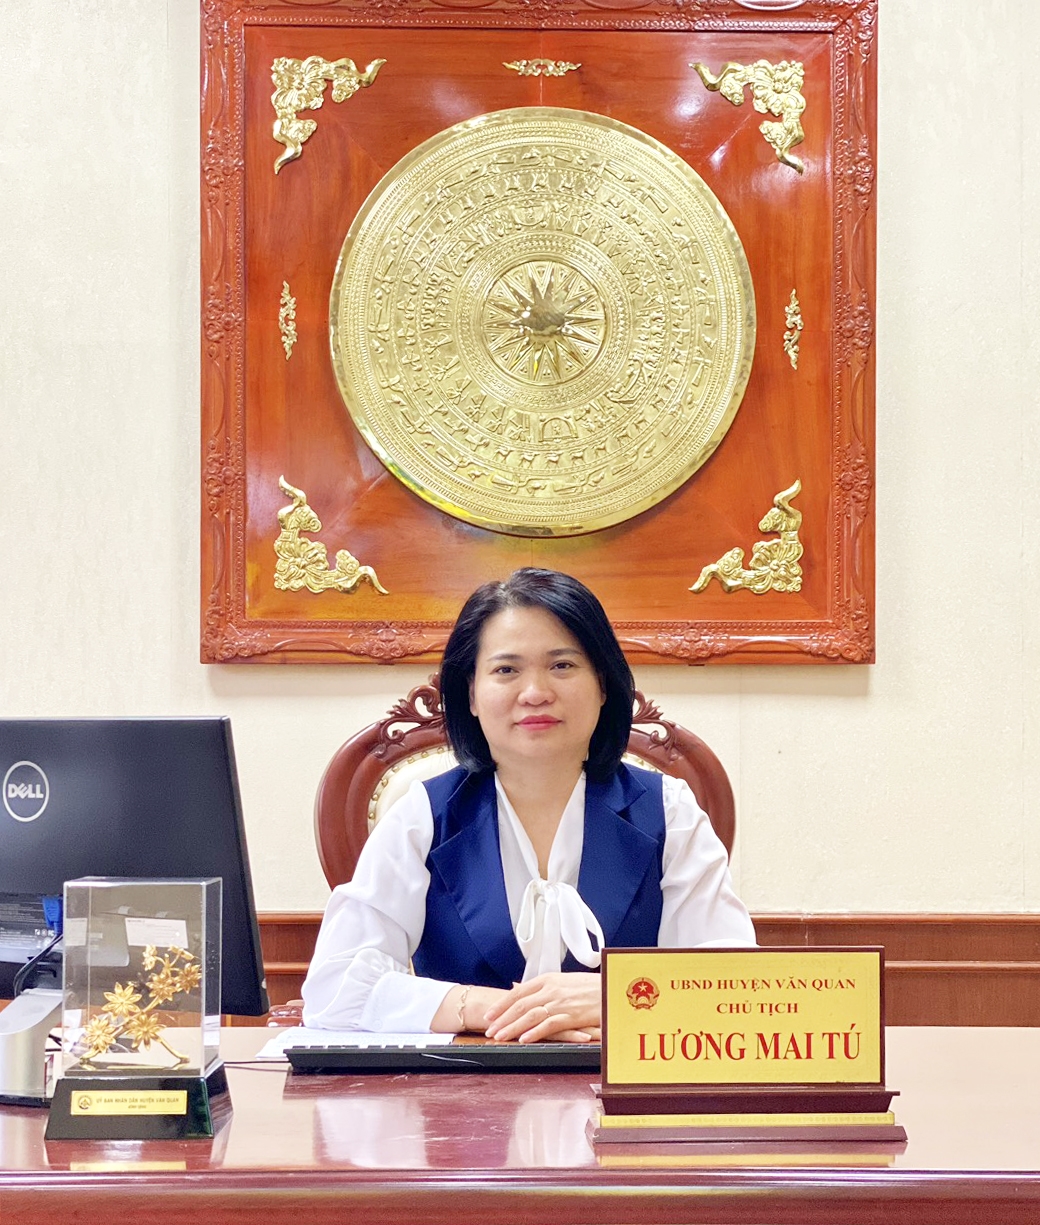 Bà Lương Mai Tú, Chủ tịch UBND huyện Văn Qua